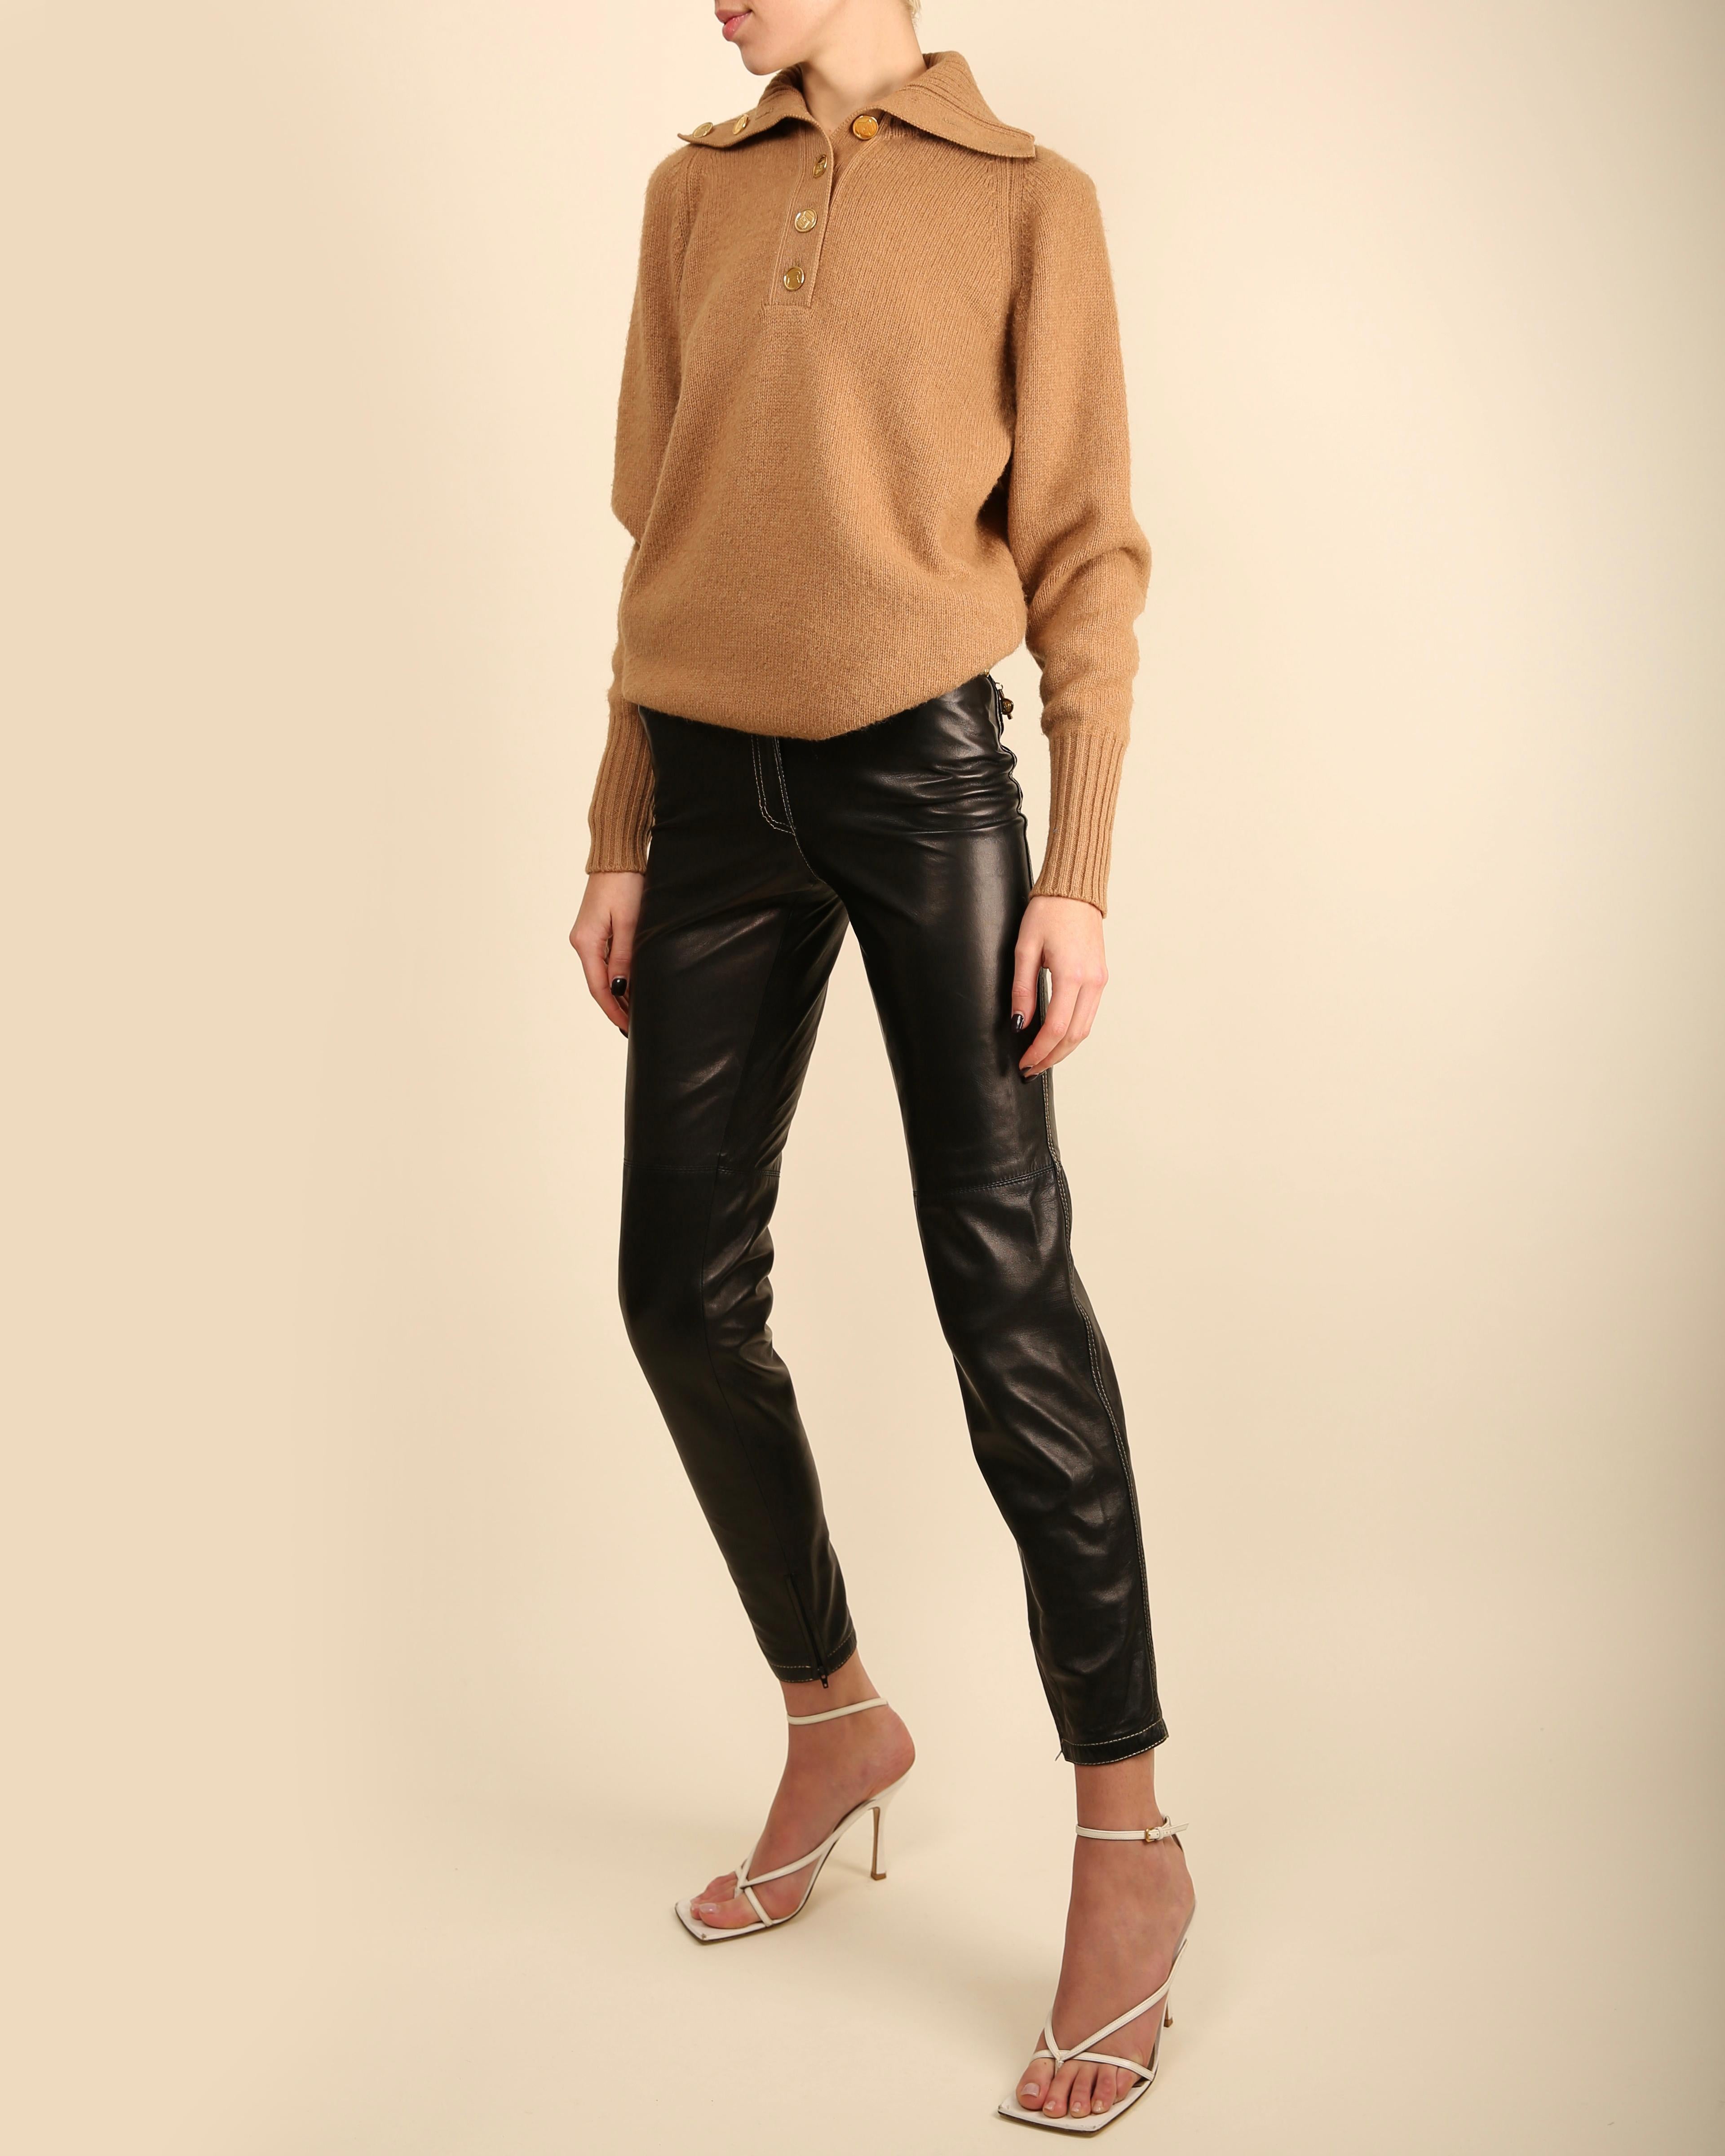 Chanel vtg tan camel beige turtleneck gold logo button cashmere dress sweater  For Sale 1